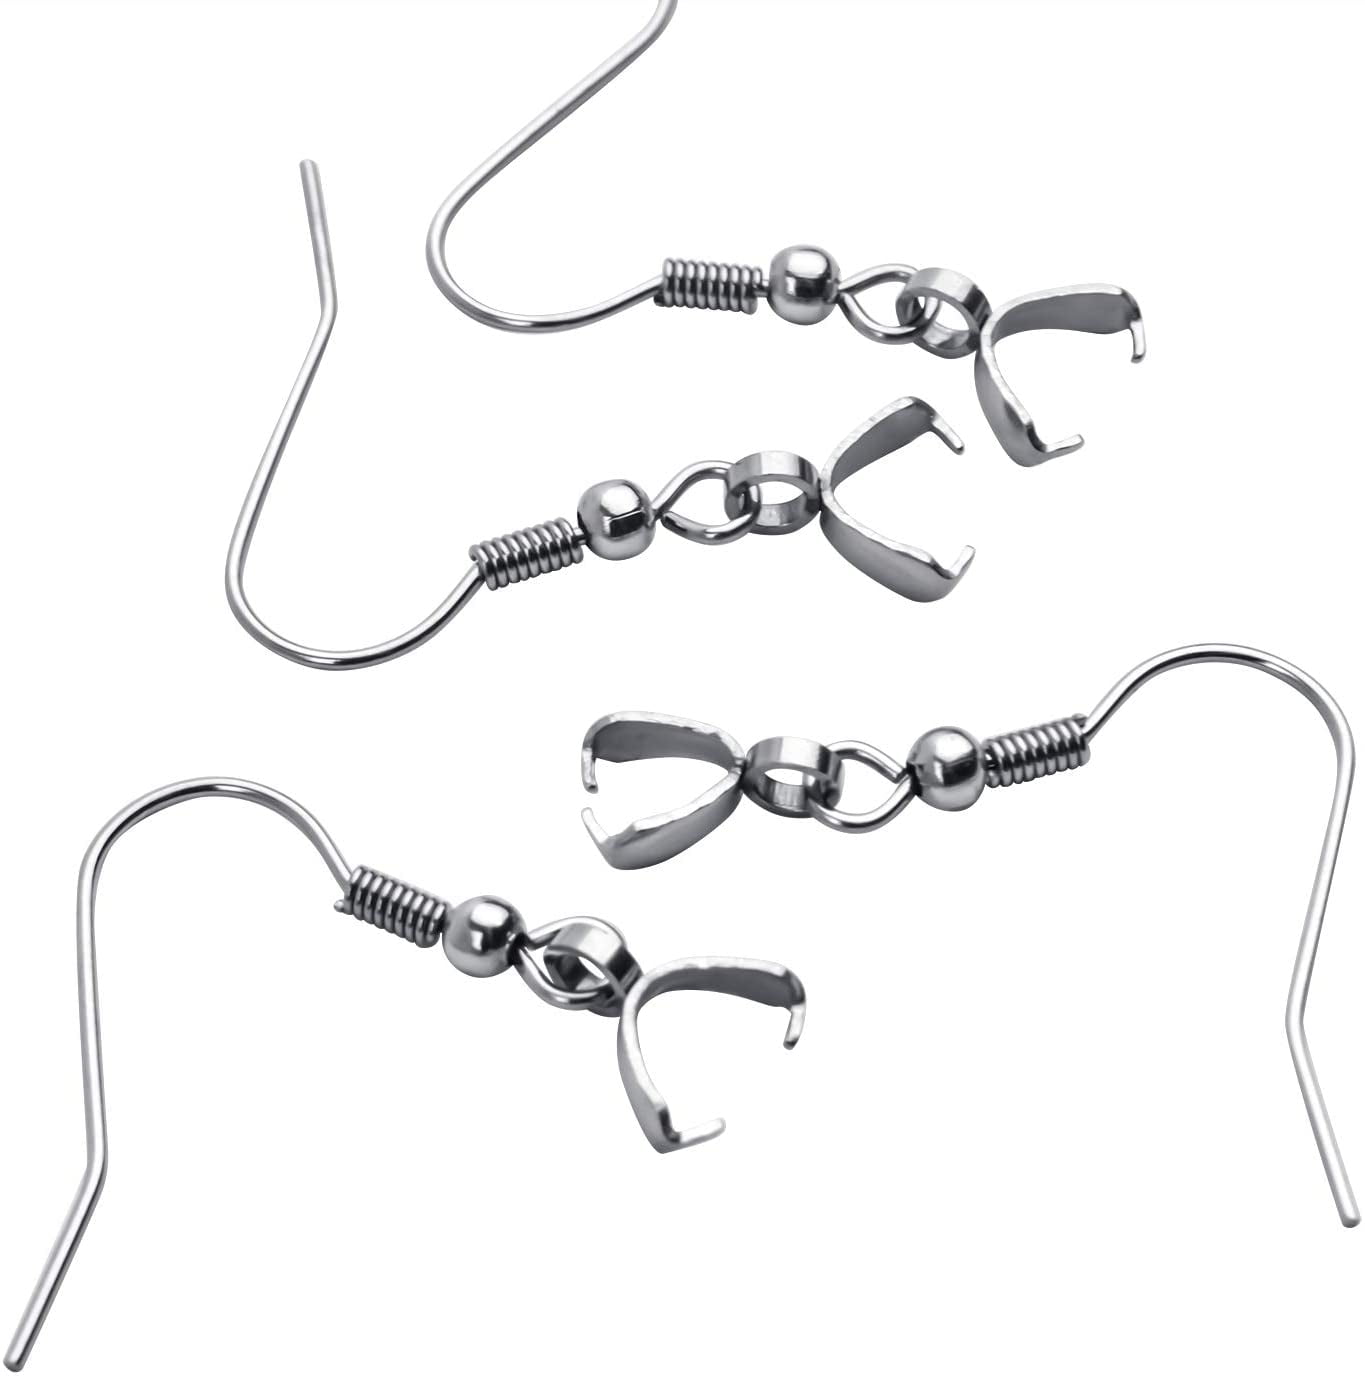 WEWAYSMILE 100 Pcs Earring Hooks for Jewelry Making, Hypoallergenic Earring  Hooks Stainless Steel Earring Fish Hooks for Women Girls Men Sensitive Ears  - Yahoo Shopping